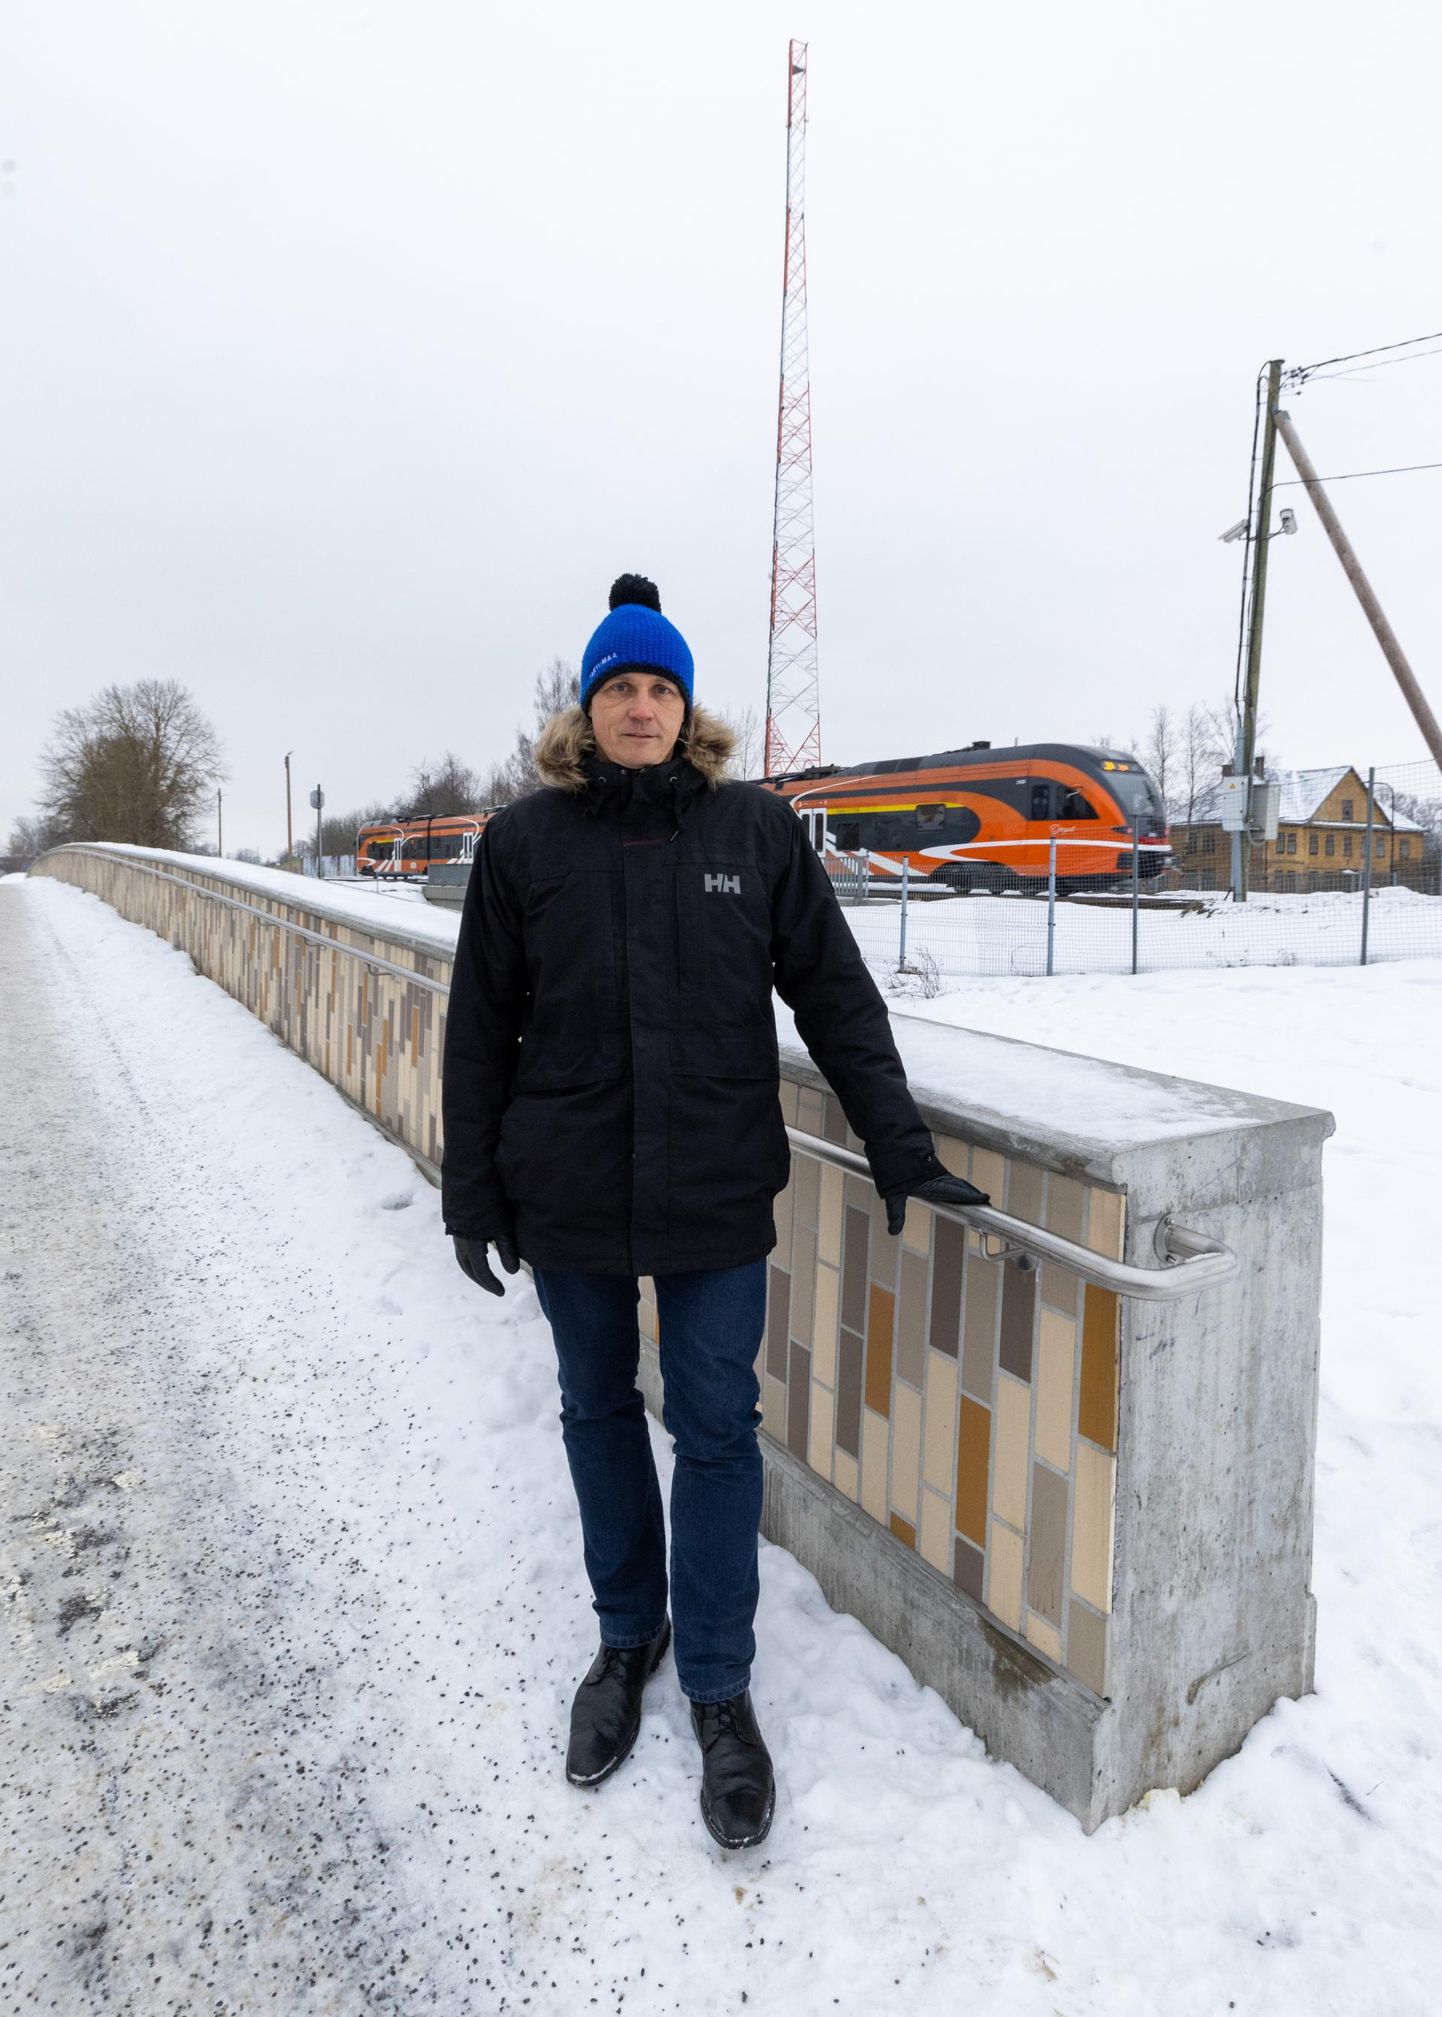 Tuhatkond tartlast elavad häiriva raudteemüra piirkonnas, tõdes Tartu abilinnapea Raimond Tamm eile Riia–Vaksali ristmikul.